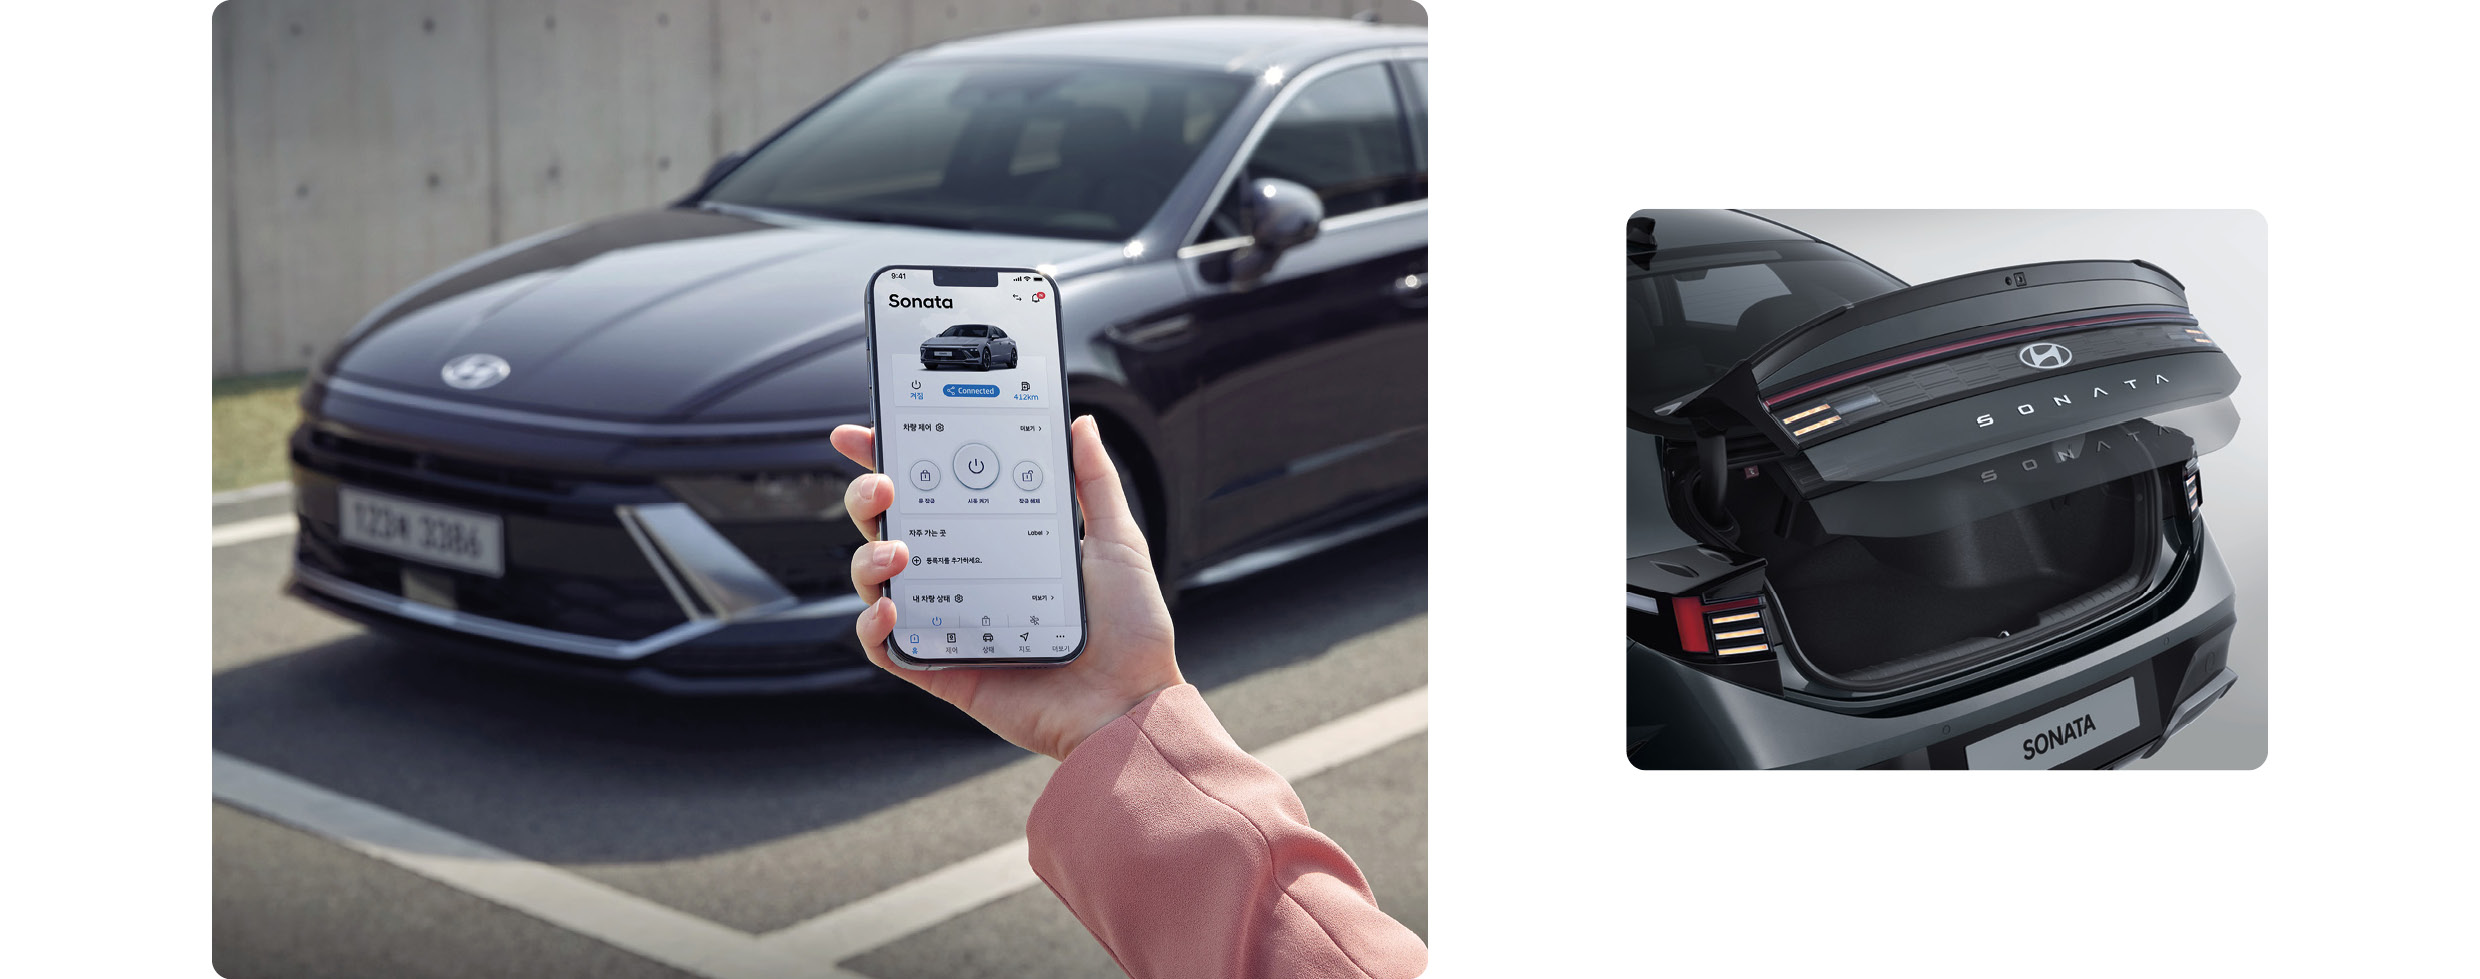 현대자동차 쏘나타 디 엣지에 디지털 키 2와 스마트 전동식 트렁크가 적용된 모습